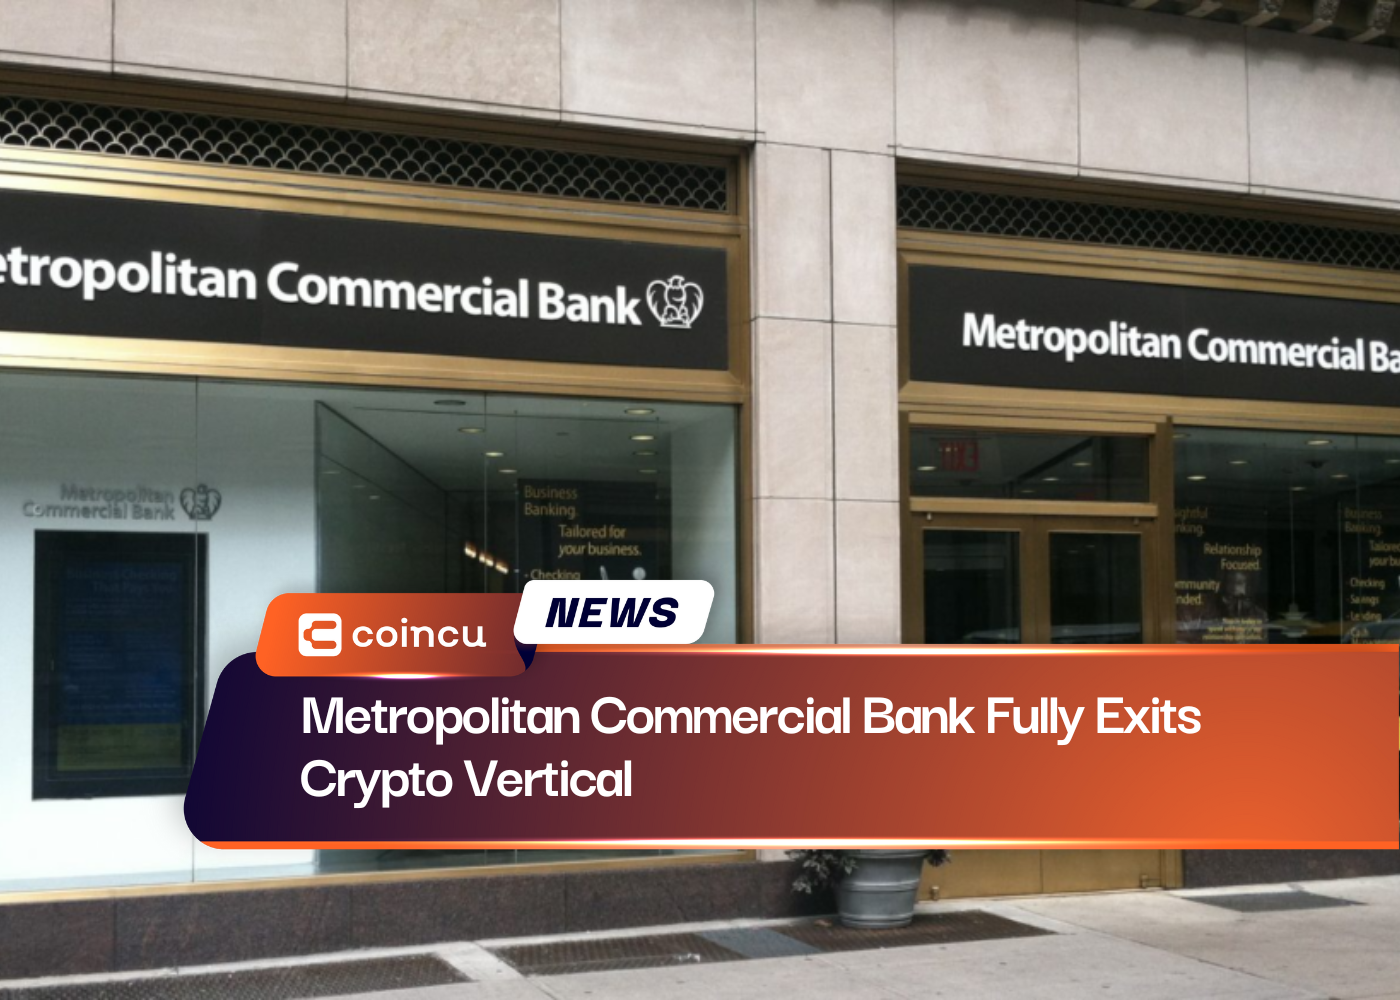 Metropolitan Commercial Bank Fully Exits Crypto Vertical